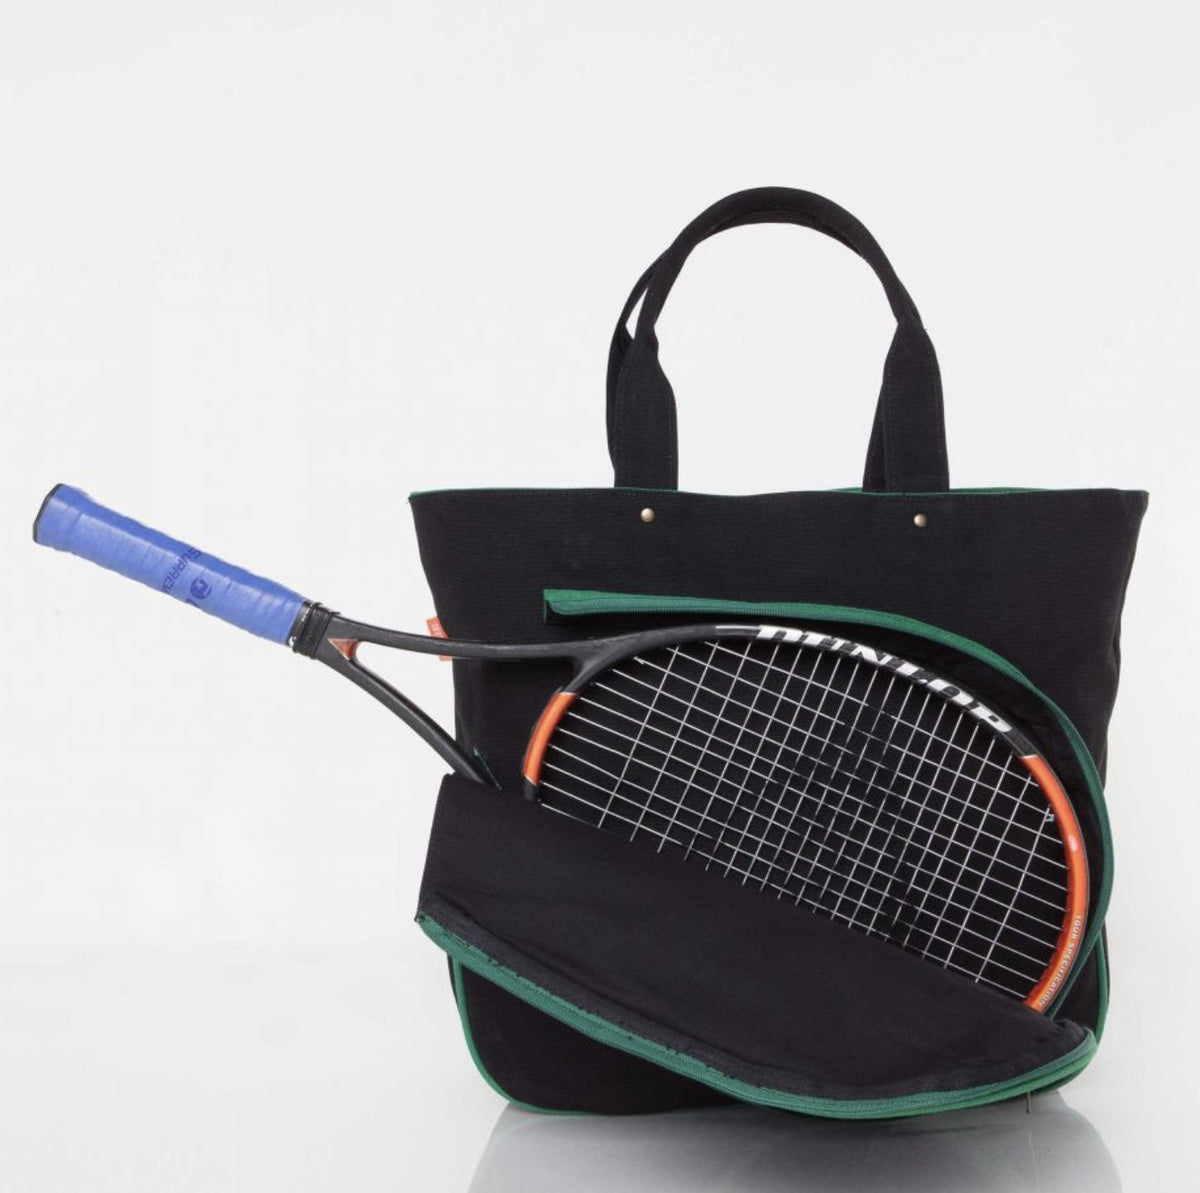 Tennis Bag Tennis Racket Tote